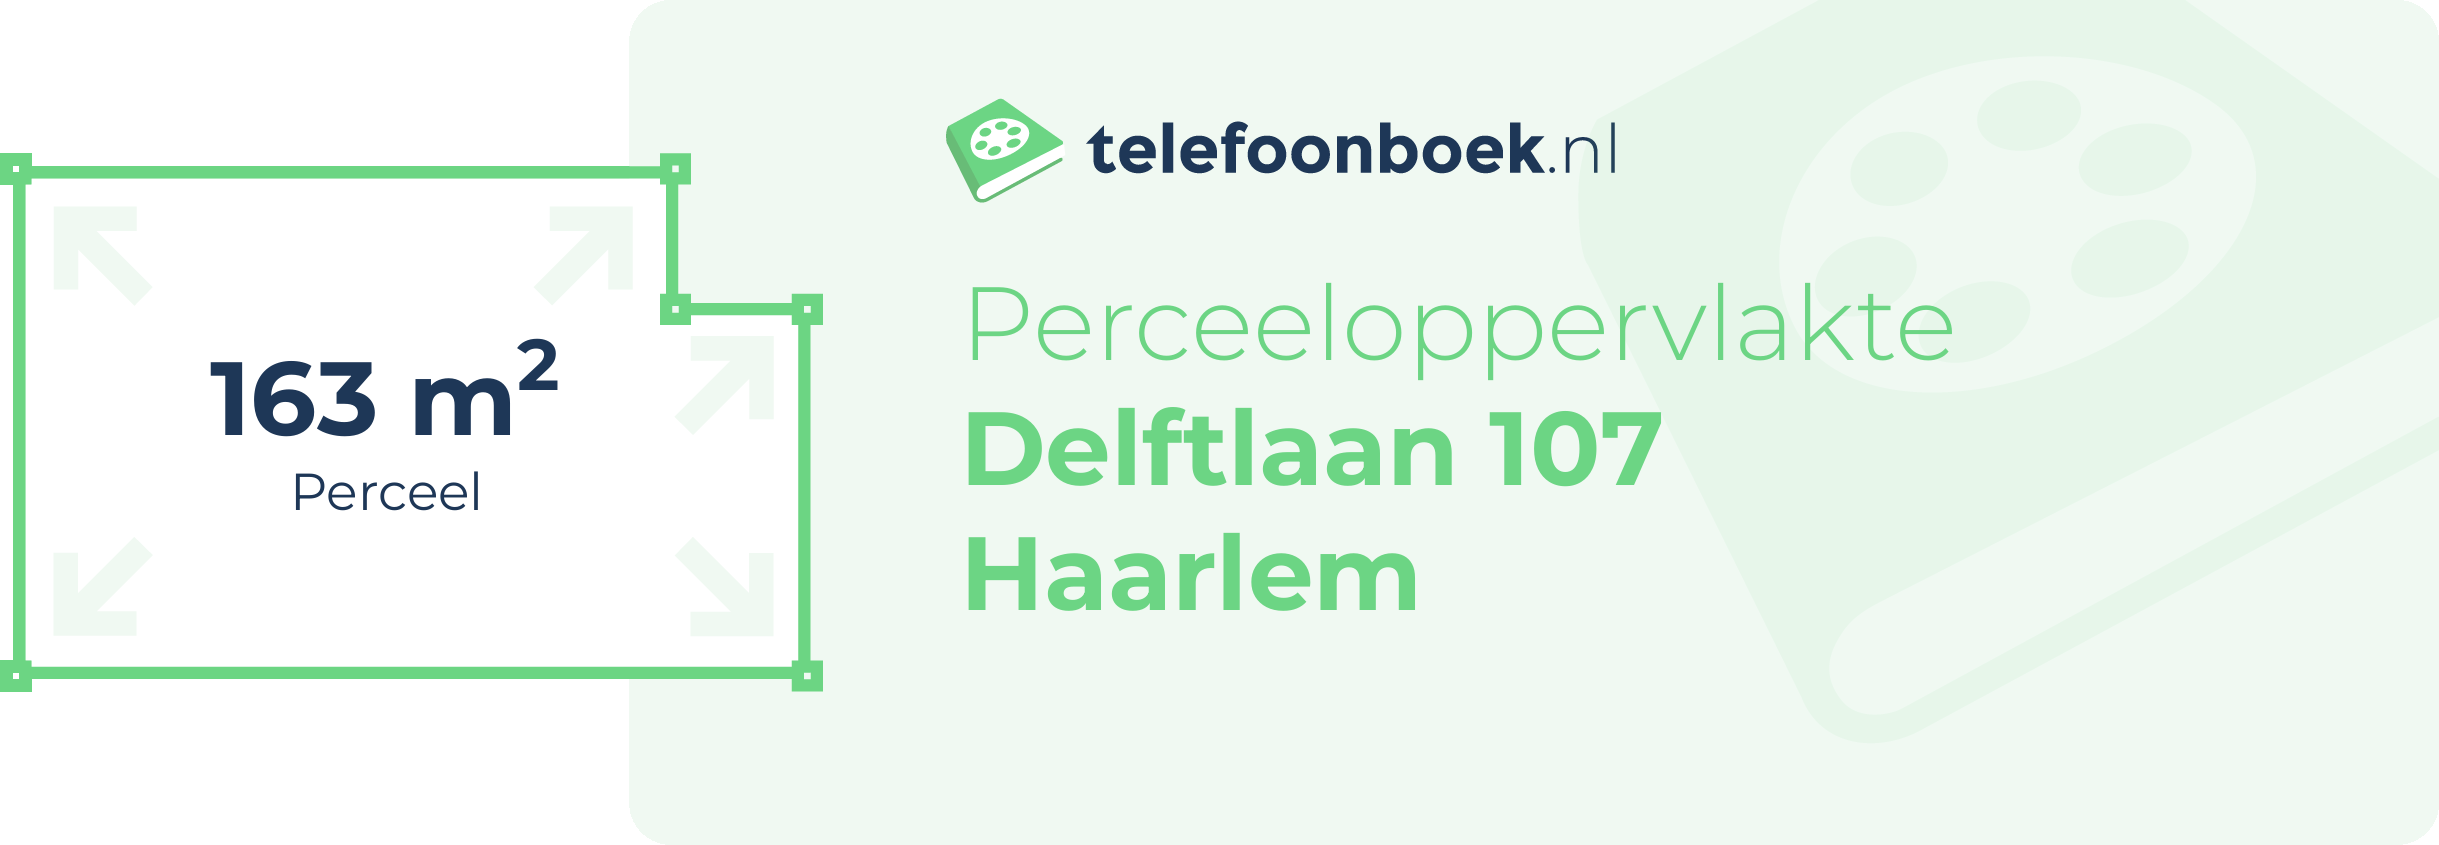 Perceeloppervlakte Delftlaan 107 Haarlem